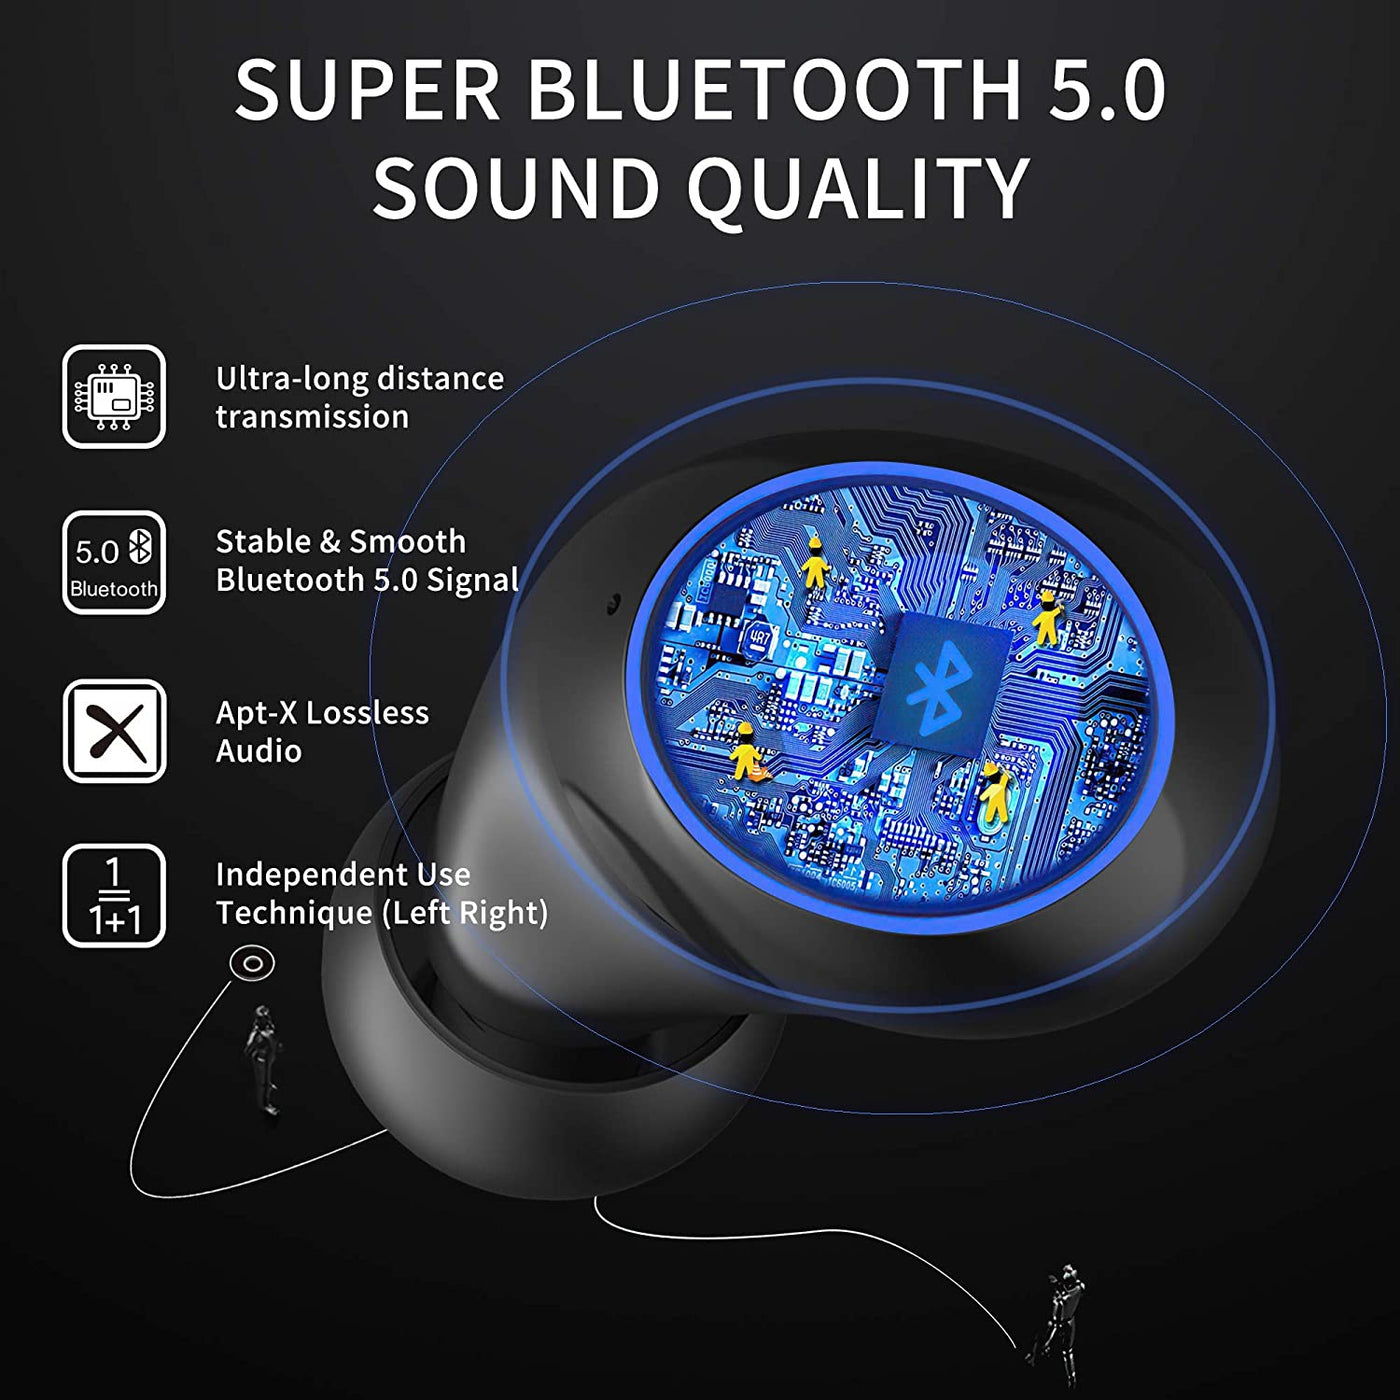 LANGTU Little Devil Waterproof Bluetooth Wireless Noise Canceling Earbuds